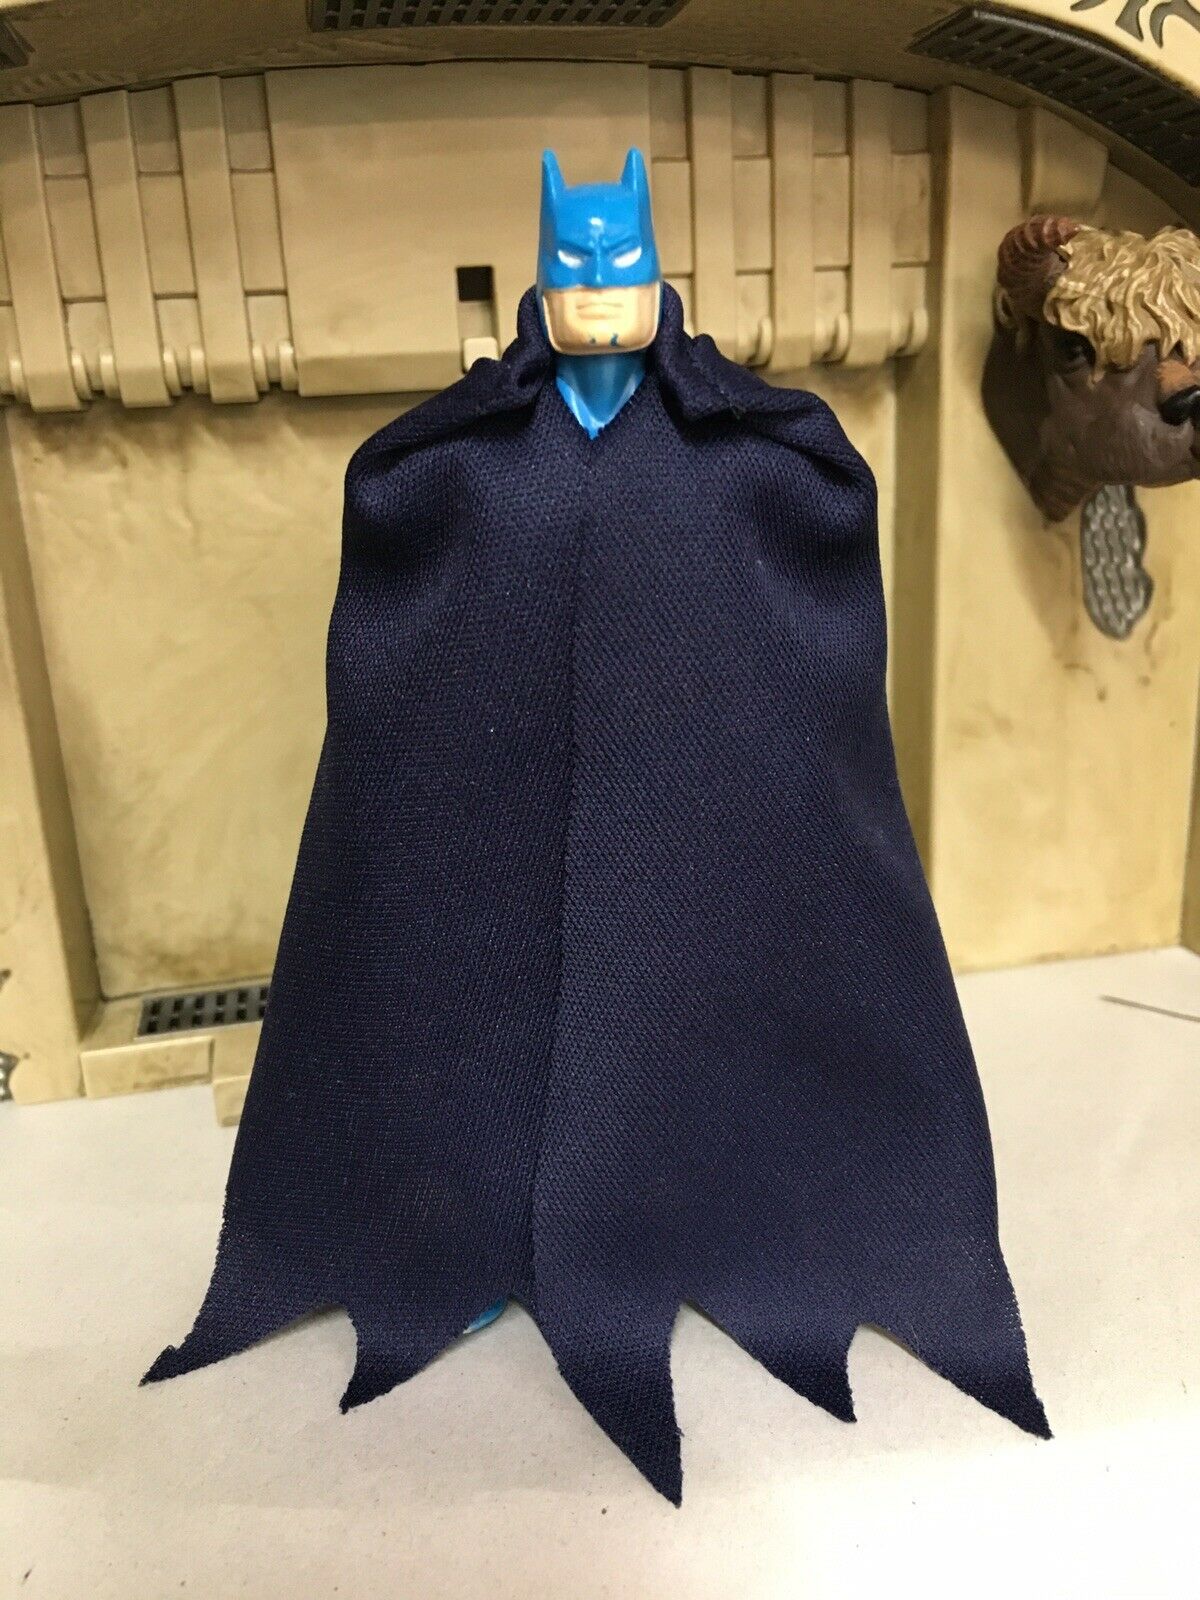 Super Powers Batman Cape Long Version – thecapemaster